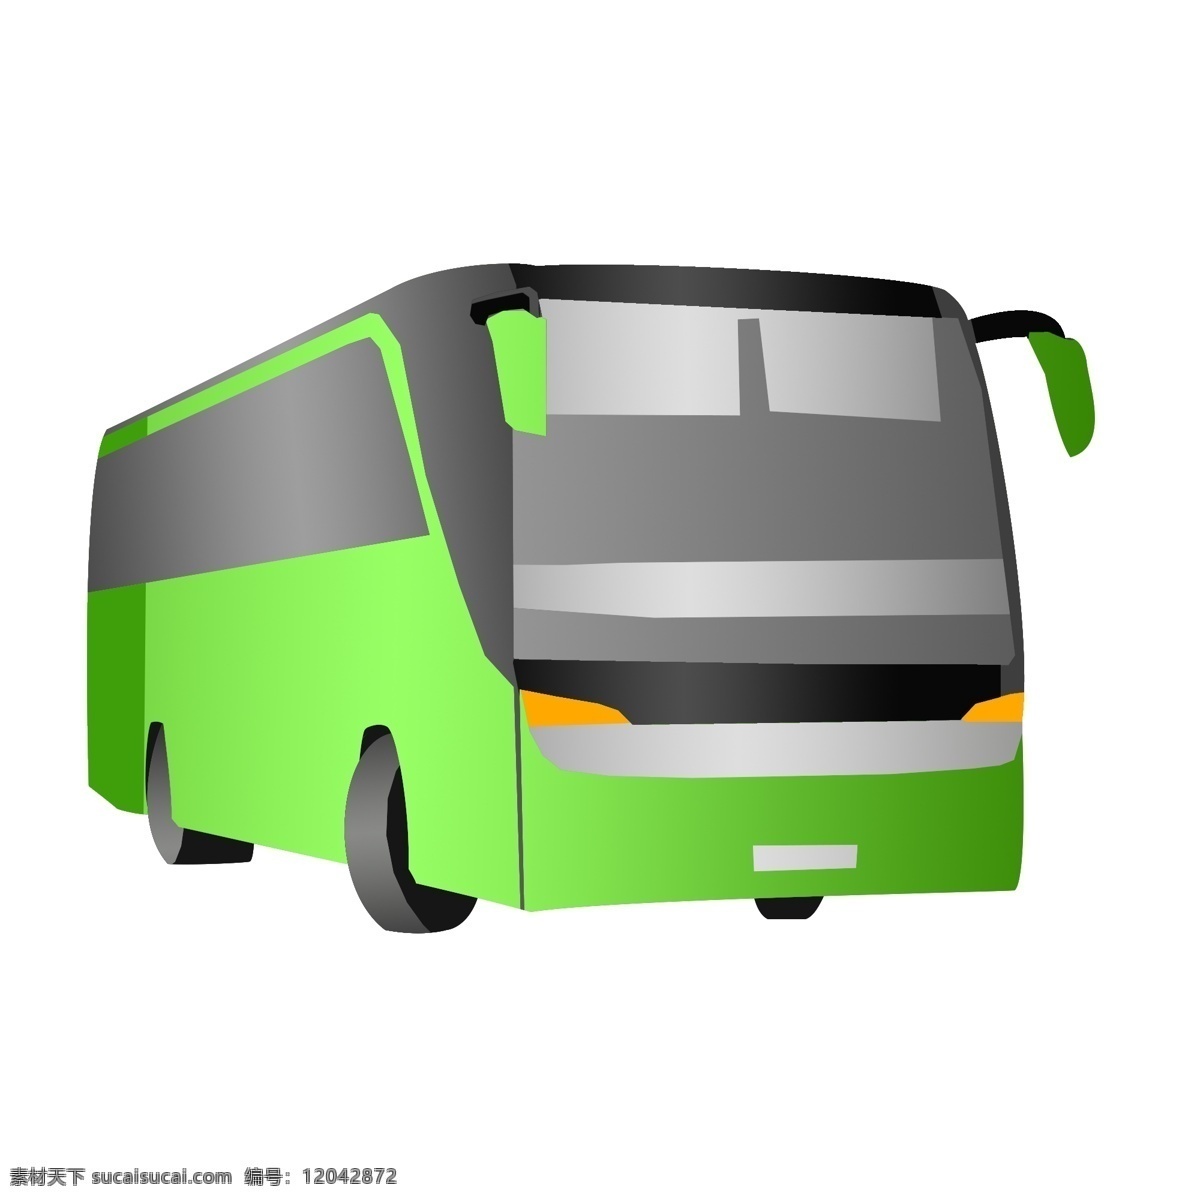 手绘 绿色 大巴 插画 客车 公交车 班车 大巴车 交通工具 手绘大汽车 绿色大巴插画 载客车 手绘巴士